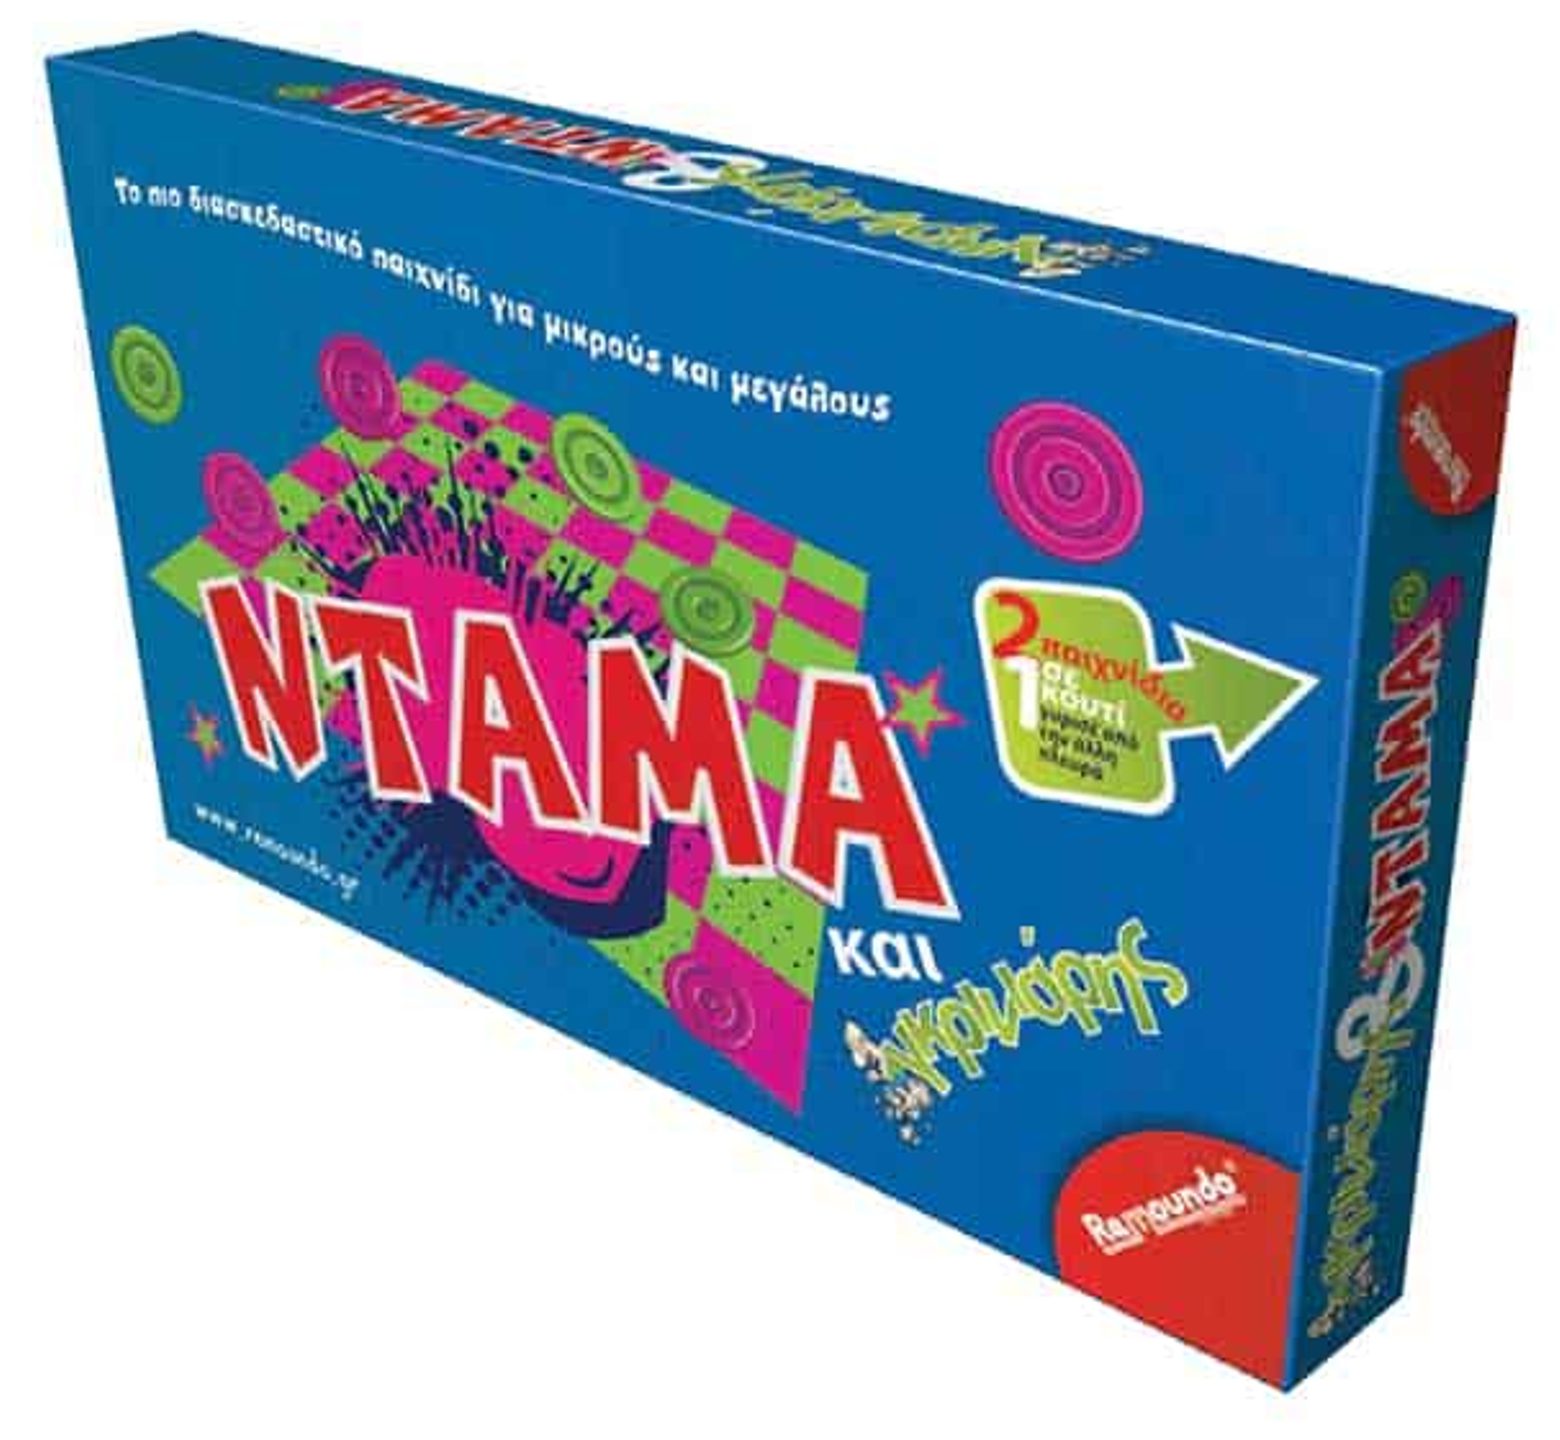 Επιτραπέζιο παιχνίδι γκρινιάρης και ντάμα σε ένα κουτί για διπλή διασκέδαση